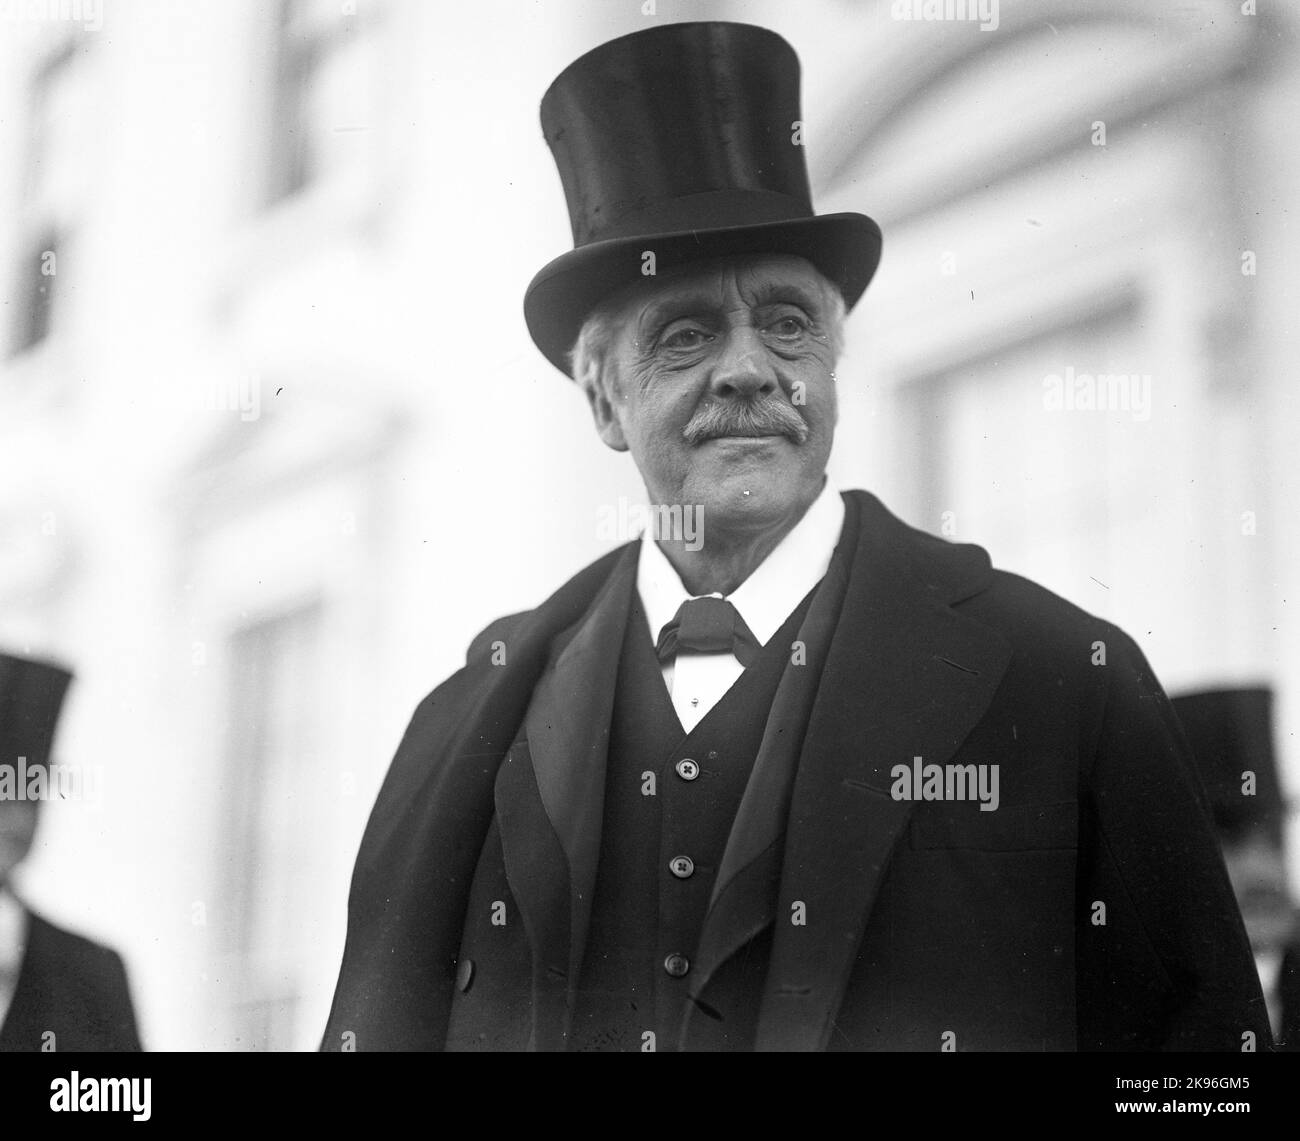 Arthur James Balfour, 1st conte di Balfour, (1848 – 1930), noto anche come Lord Balfour, statista conservatore britannico che ha servito come primo ministro del Regno Unito dal 1902 al 1905. Foto Stock